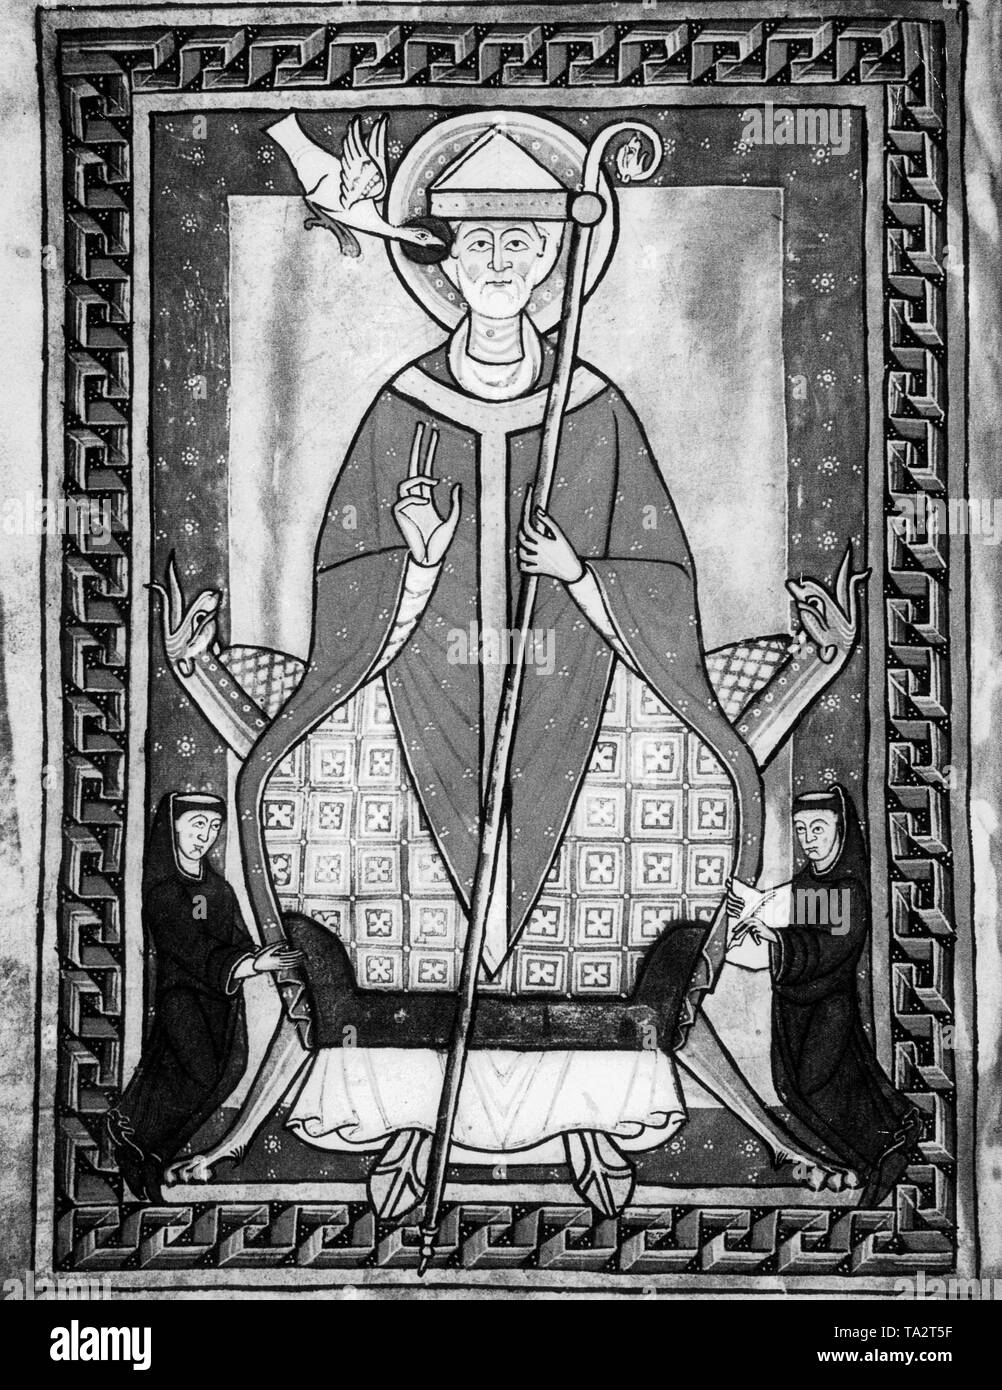 Une miniature montrant le Pape Grégoire VII (de son vrai nom Hildebrand, a vécu entre 1019-1085, Pape de 1073 à 1085). La miniature est de les manuscrits de Grégoire VII. Banque D'Images